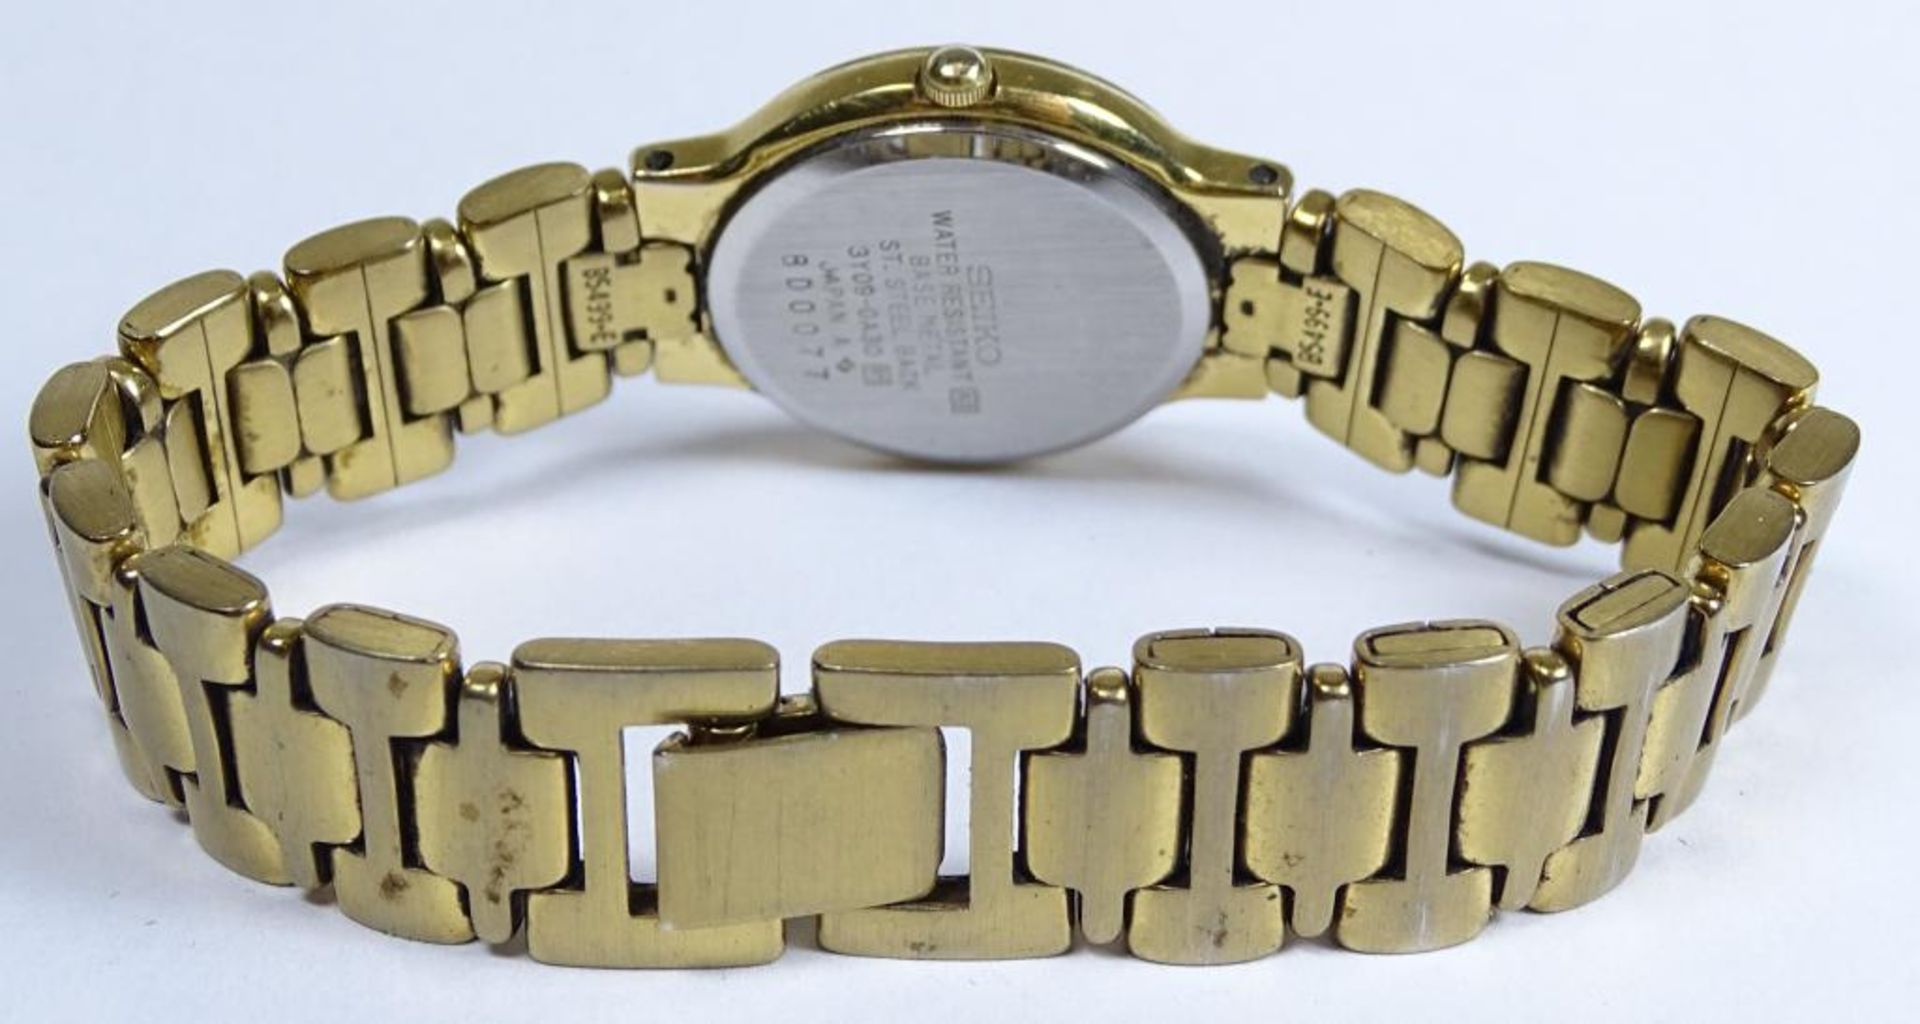 Damen Armbanduhr "Seiko",Quartz,vergoldet,berieben,Funktion nicht geprüft,Alters u.Gebrauchsspure - Bild 3 aus 4